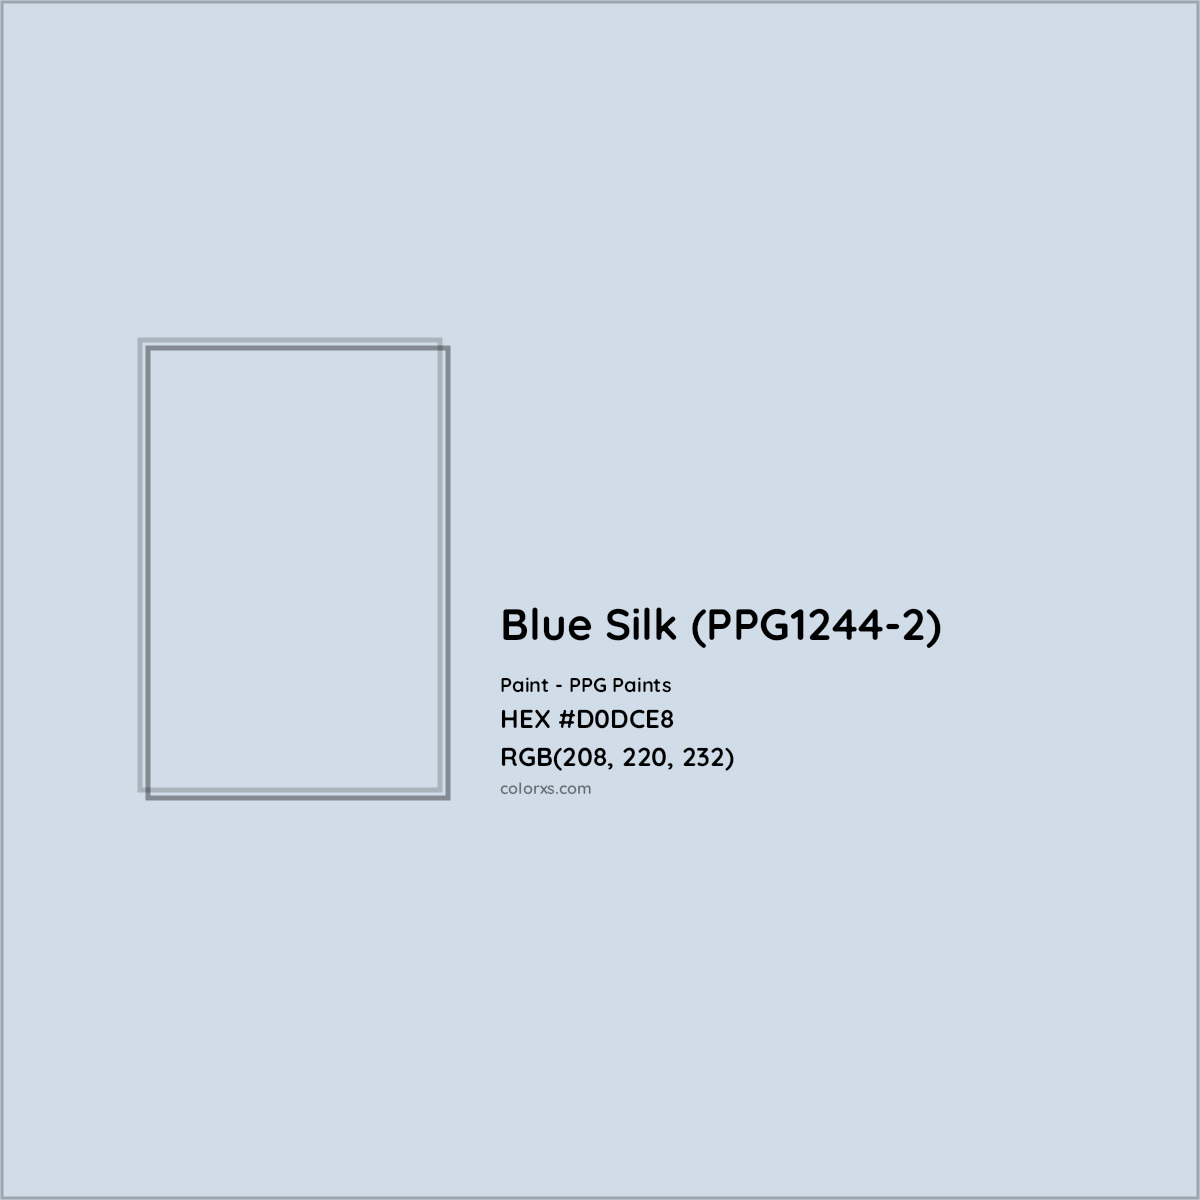 HEX #D0DCE8 Blue Silk (PPG1244-2) Paint PPG Paints - Color Code